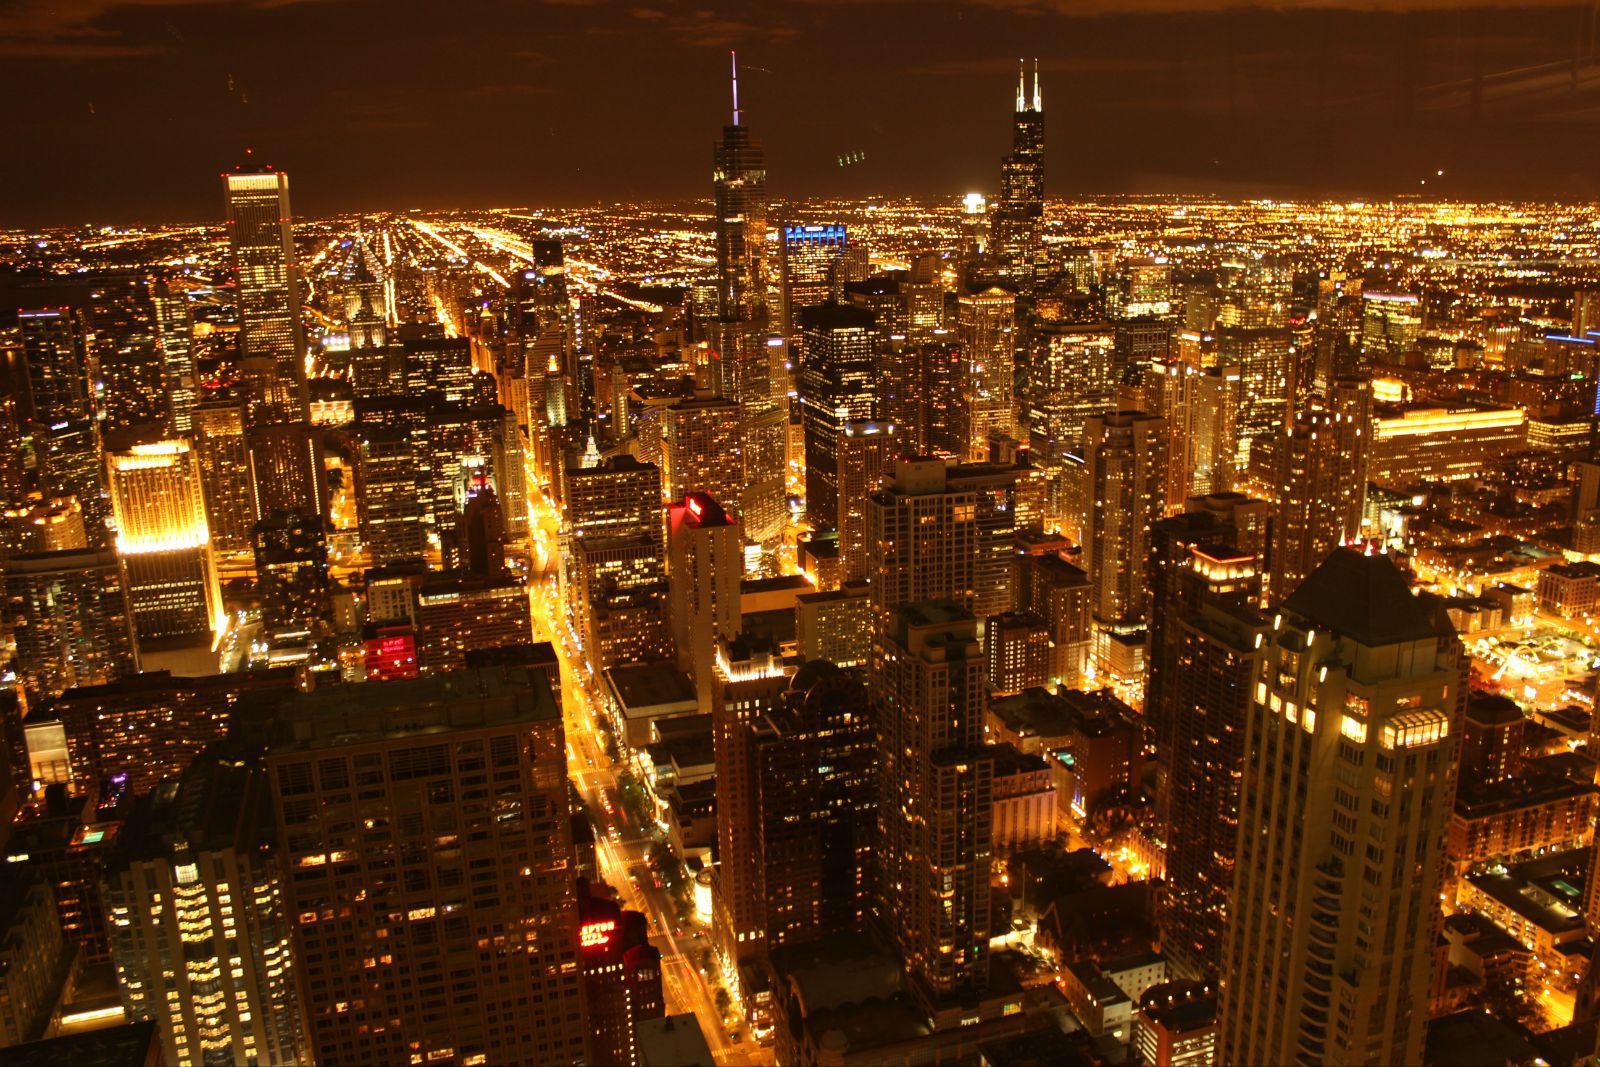 芝加哥之夜,虽不及重庆夜景的层次重叠,但一马平川也铺展出了另一种